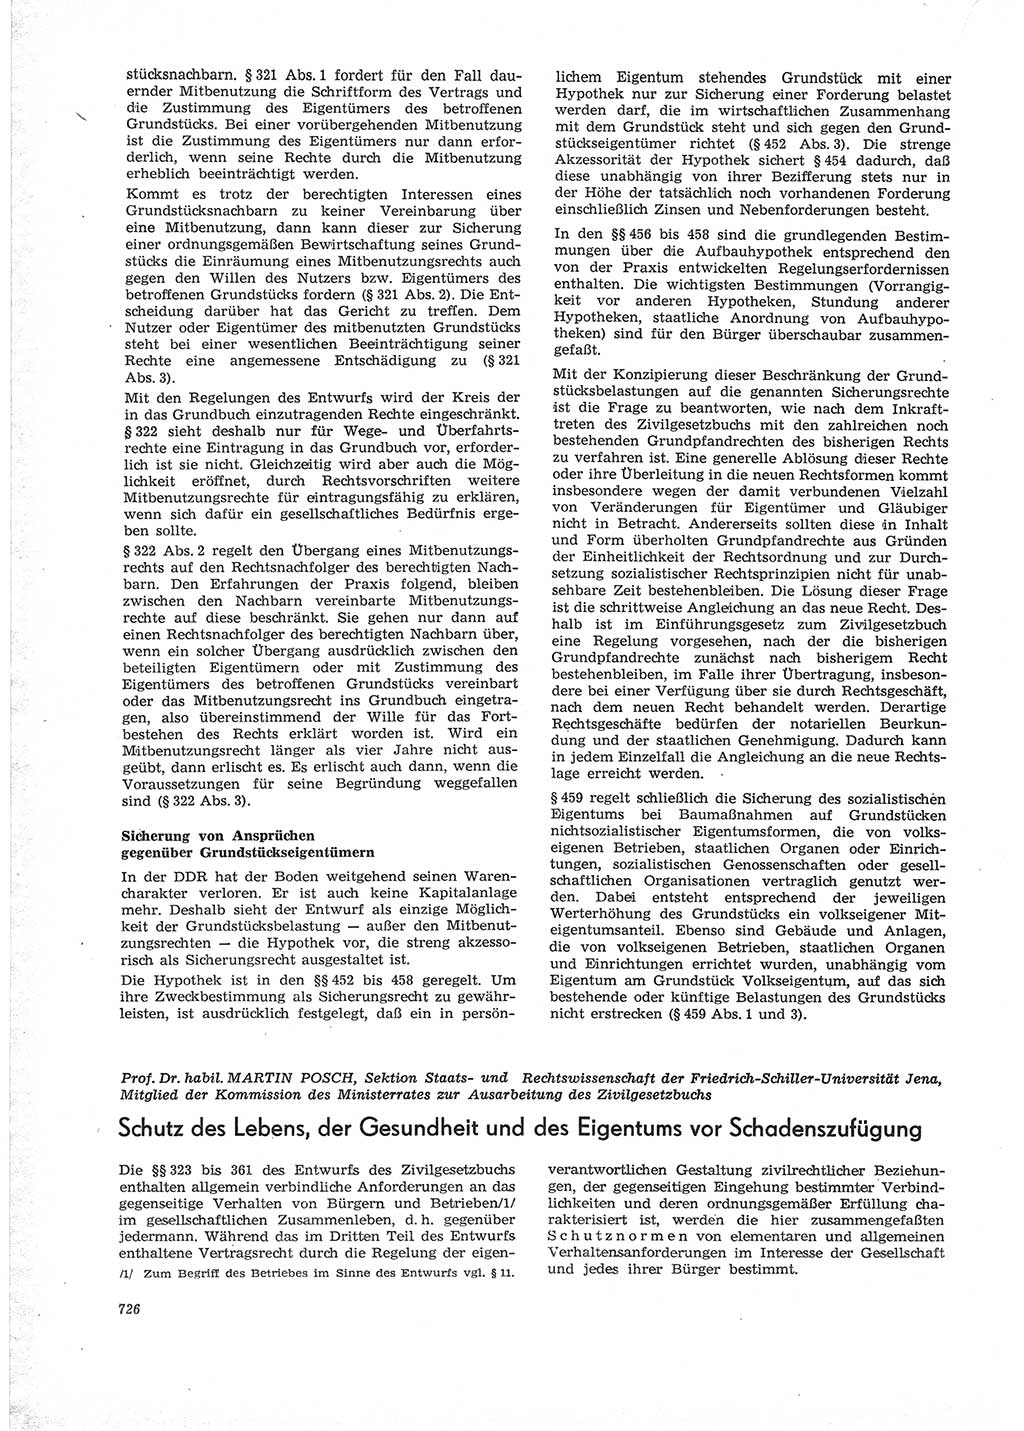 Neue Justiz (NJ), Zeitschrift für Recht und Rechtswissenschaft [Deutsche Demokratische Republik (DDR)], 28. Jahrgang 1974, Seite 726 (NJ DDR 1974, S. 726)